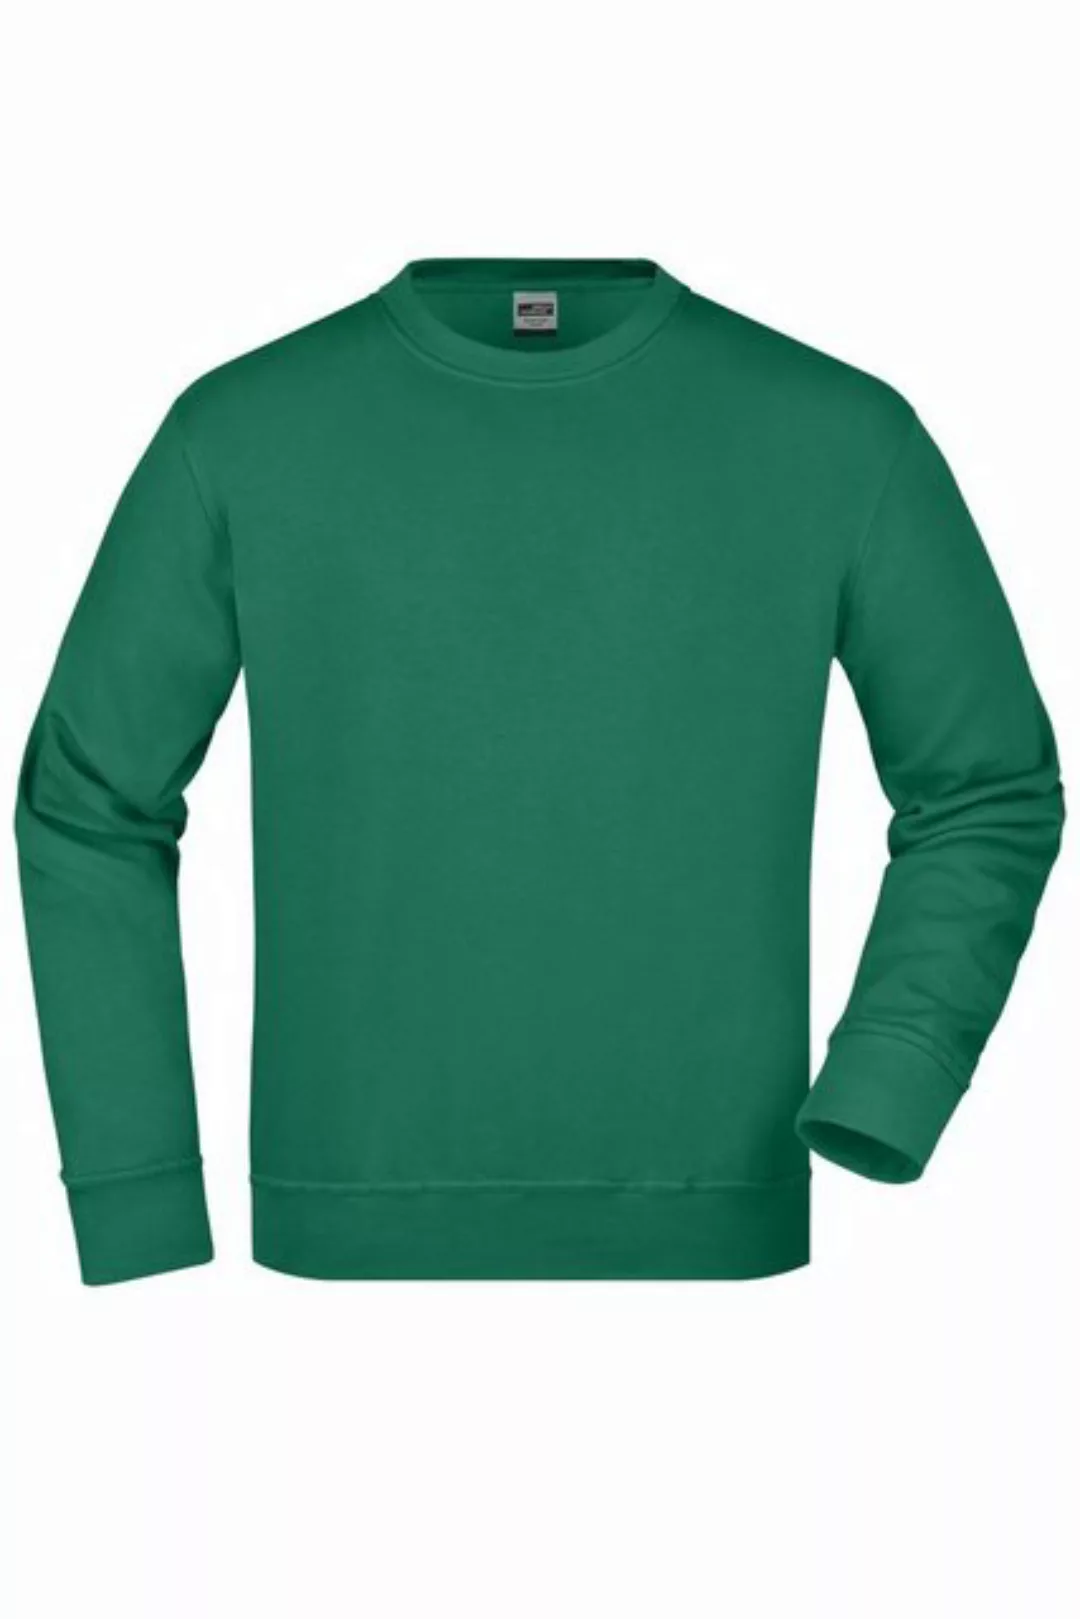 James & Nicholson Sweatshirt Strapazierfähiger Workwear Pullover für Arbeit günstig online kaufen